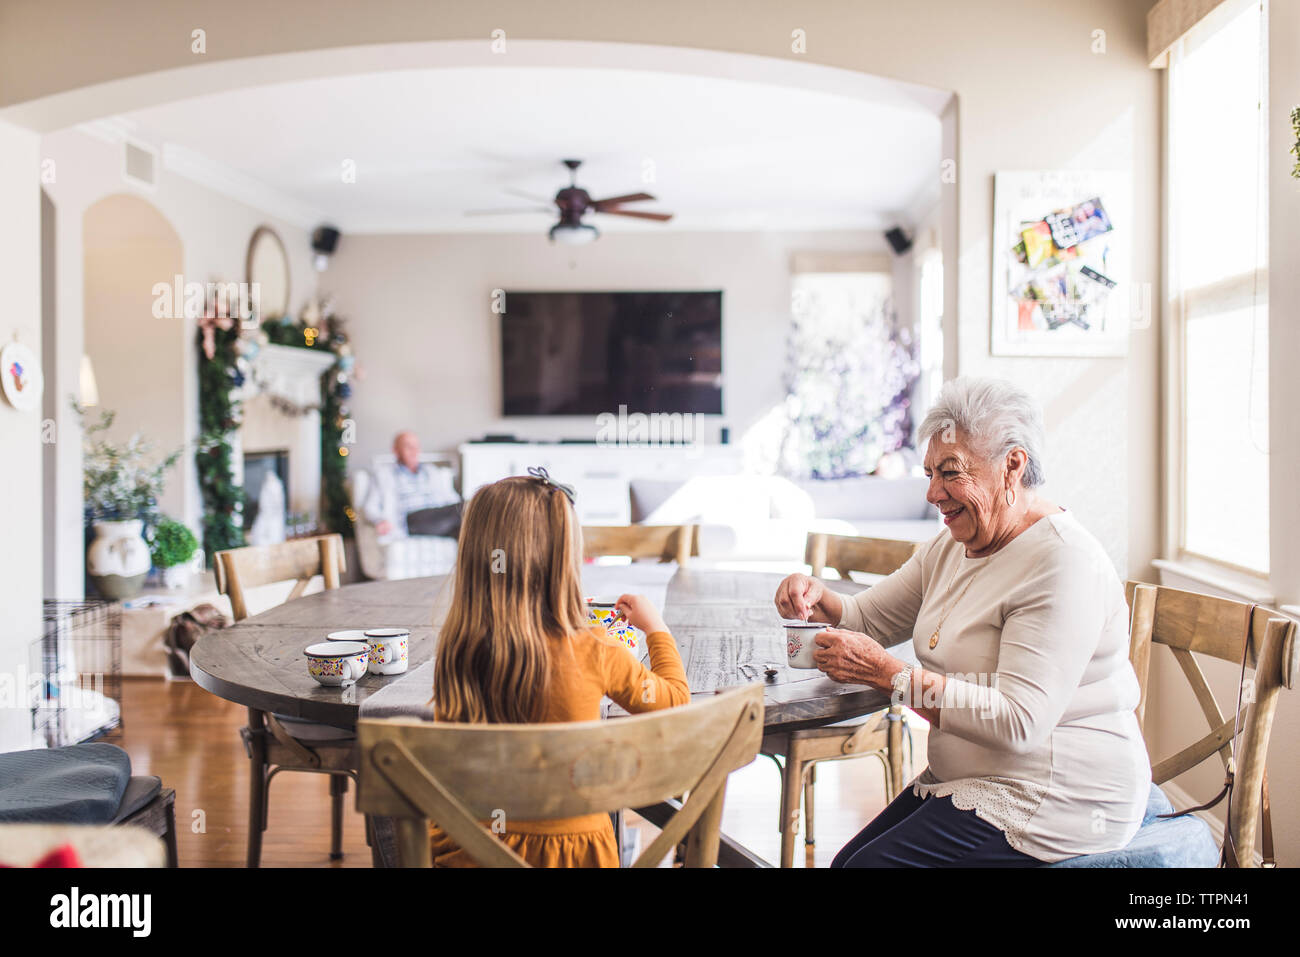 Mehr-generationen-Familie spielen mit Kaffee am Küchentisch gesetzt Stockfoto